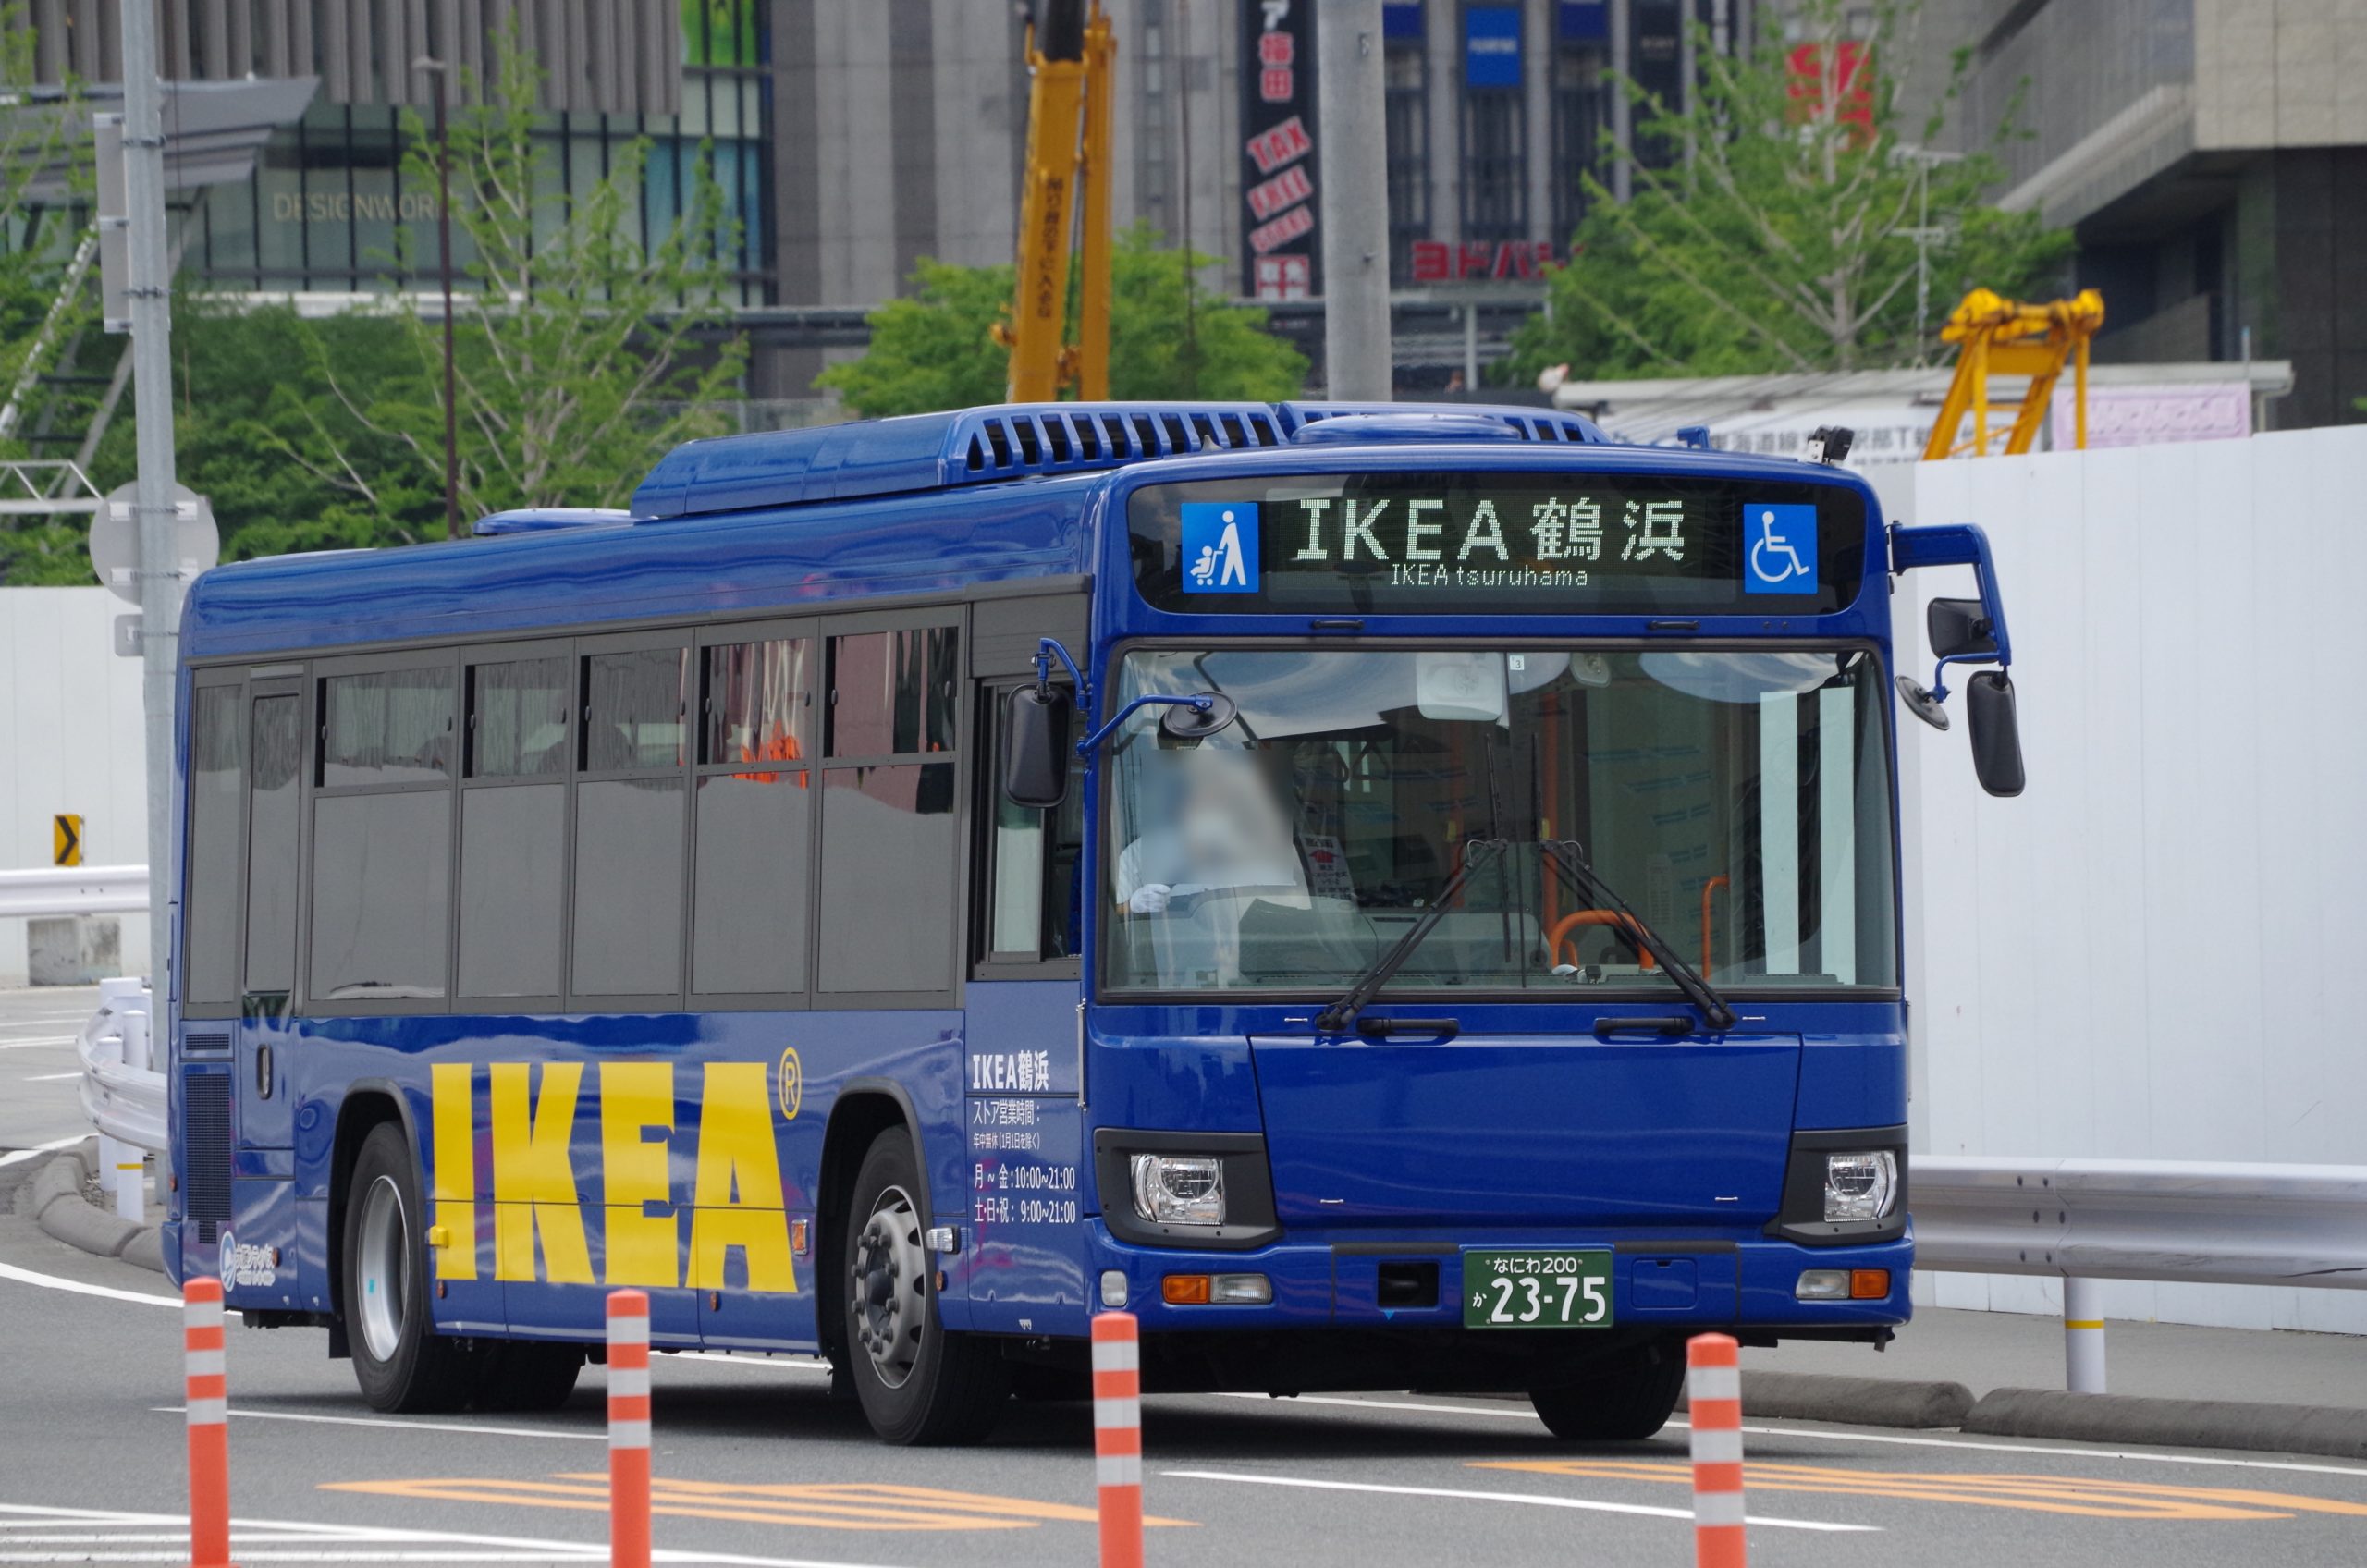 大阪シティバス なにわ0か2375 Ikeaシャトルとistad そらばすブログ